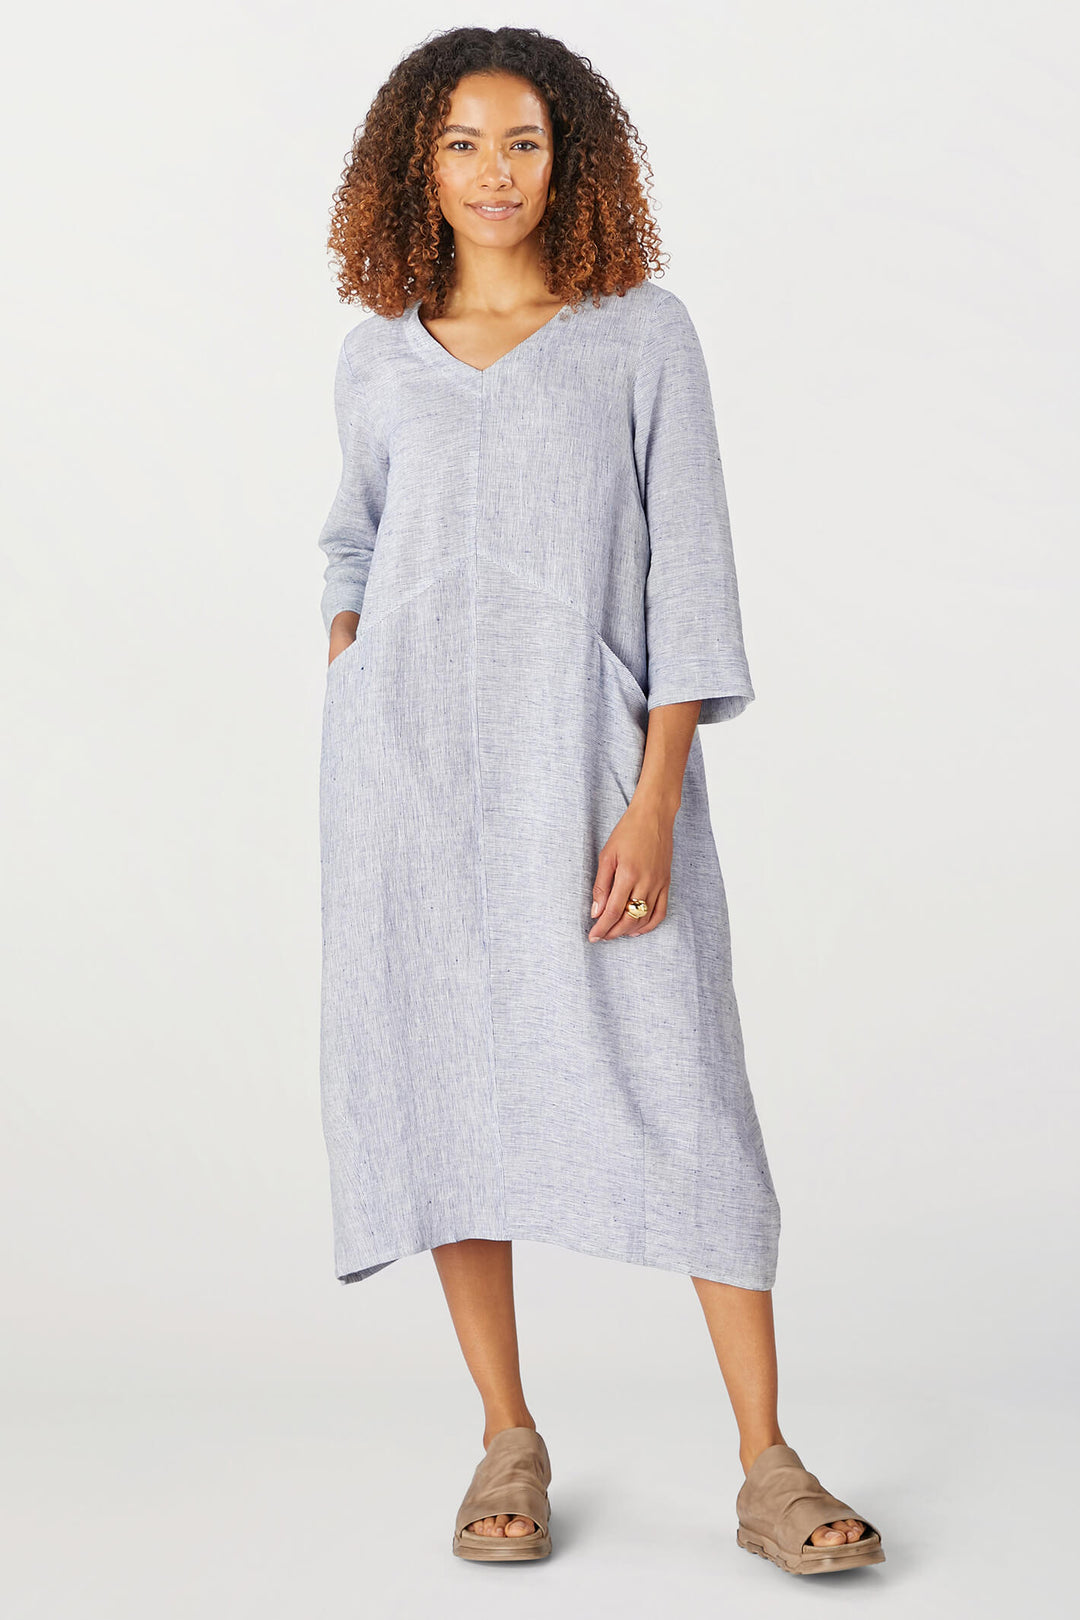 Sahara GRD5148-LTS Linen Ticking Blue Stripe Dress - Shirley Allum Boutique